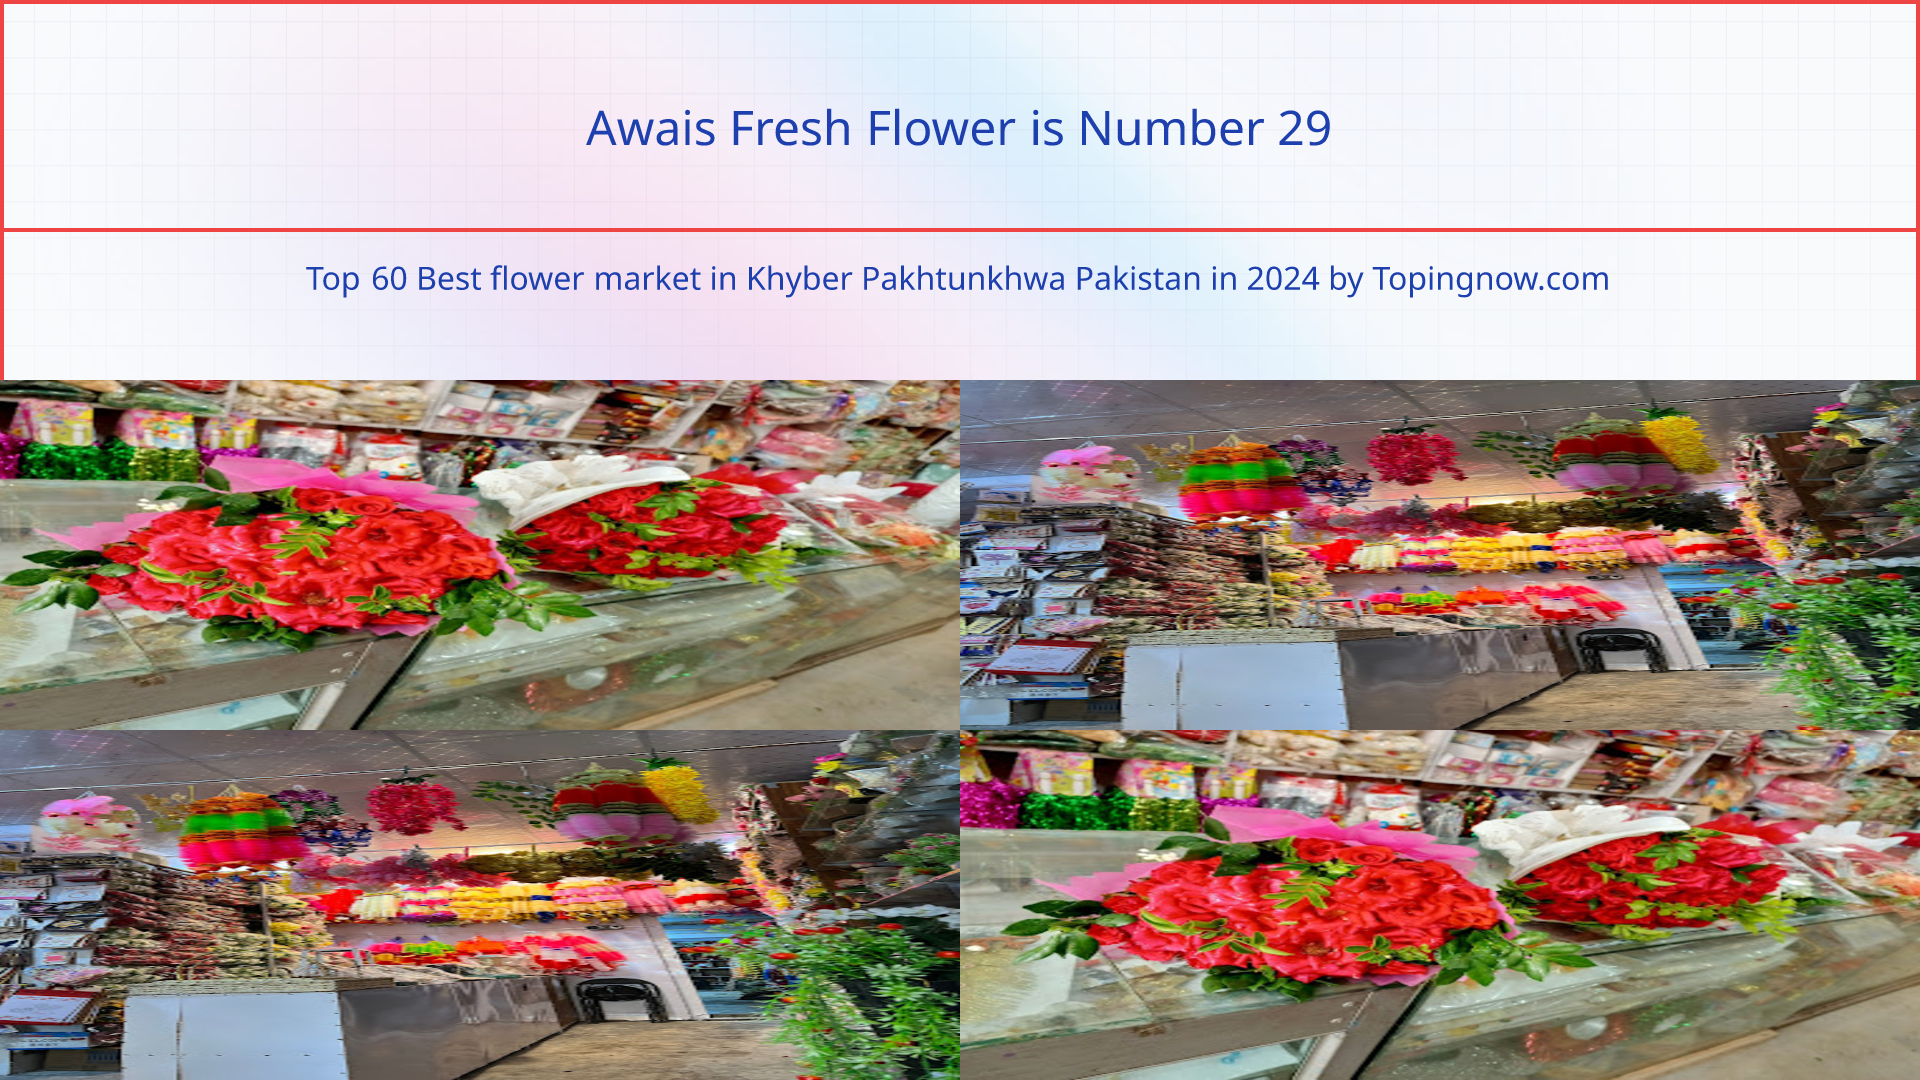 Awais Fresh Flower: Top 60 Best flower market in Khyber Pakhtunkhwa Pakistan in 2024